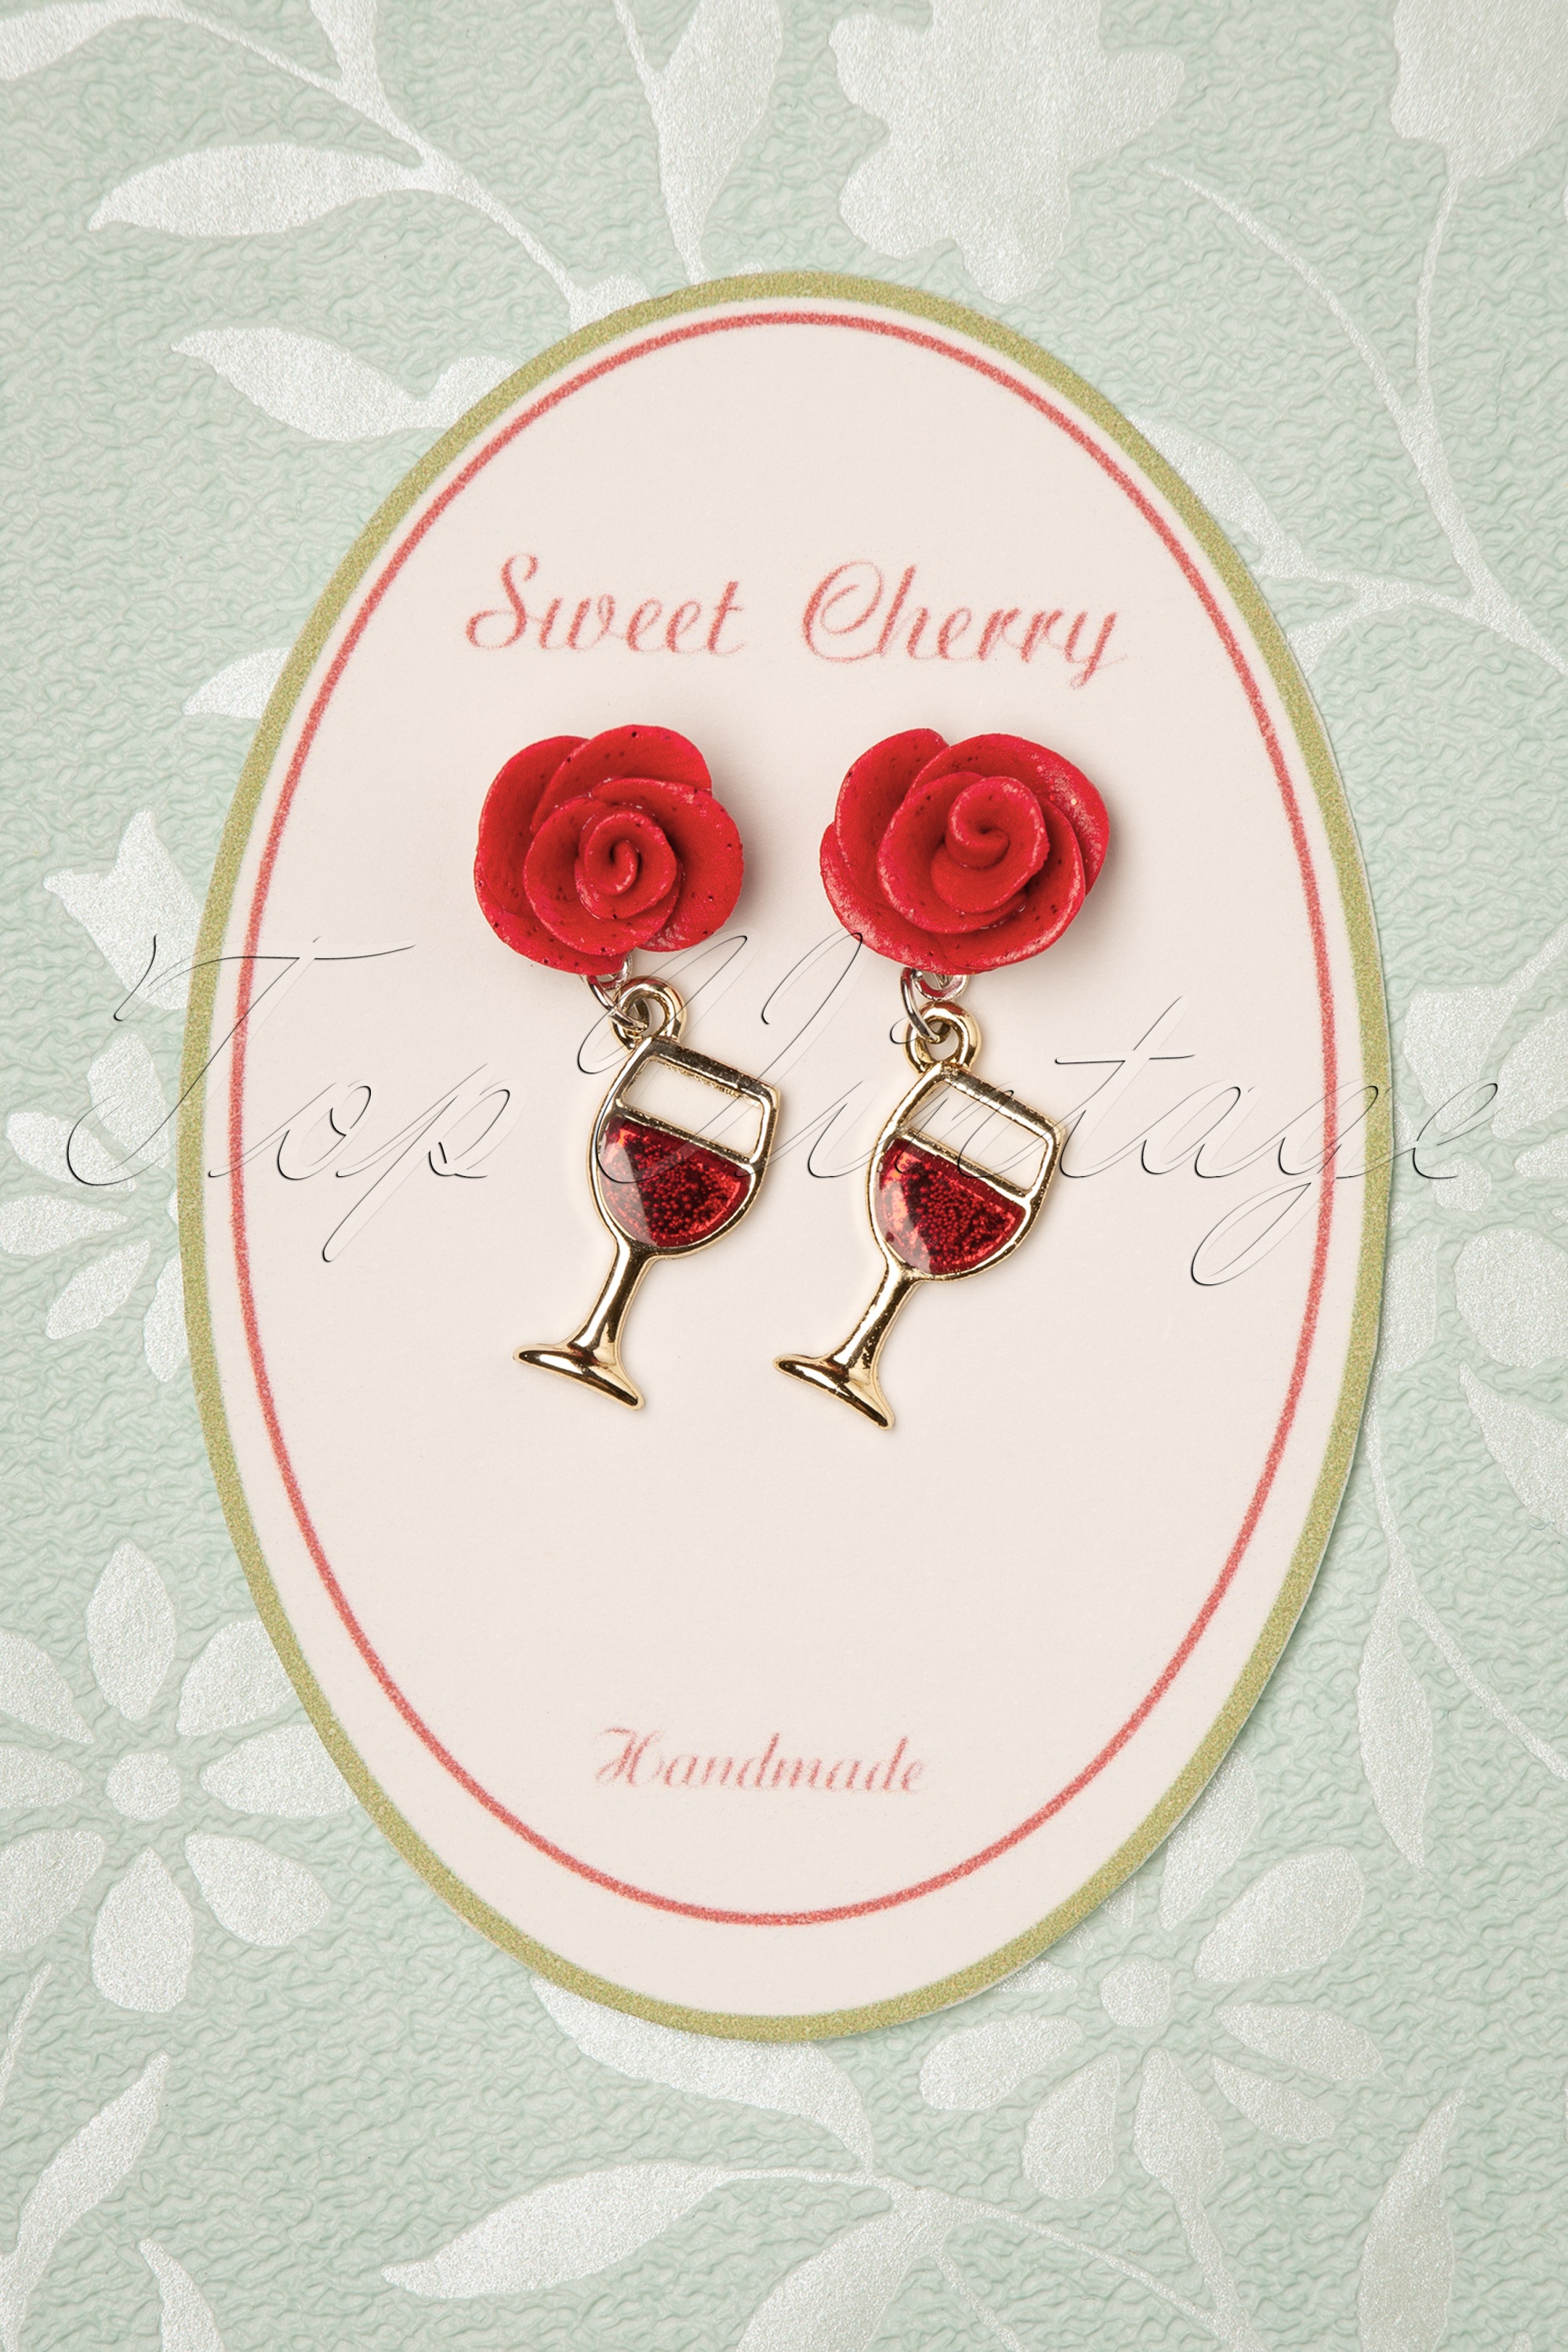 Sweet Cherry - Rose wijnglas oorbellen in rood en goud